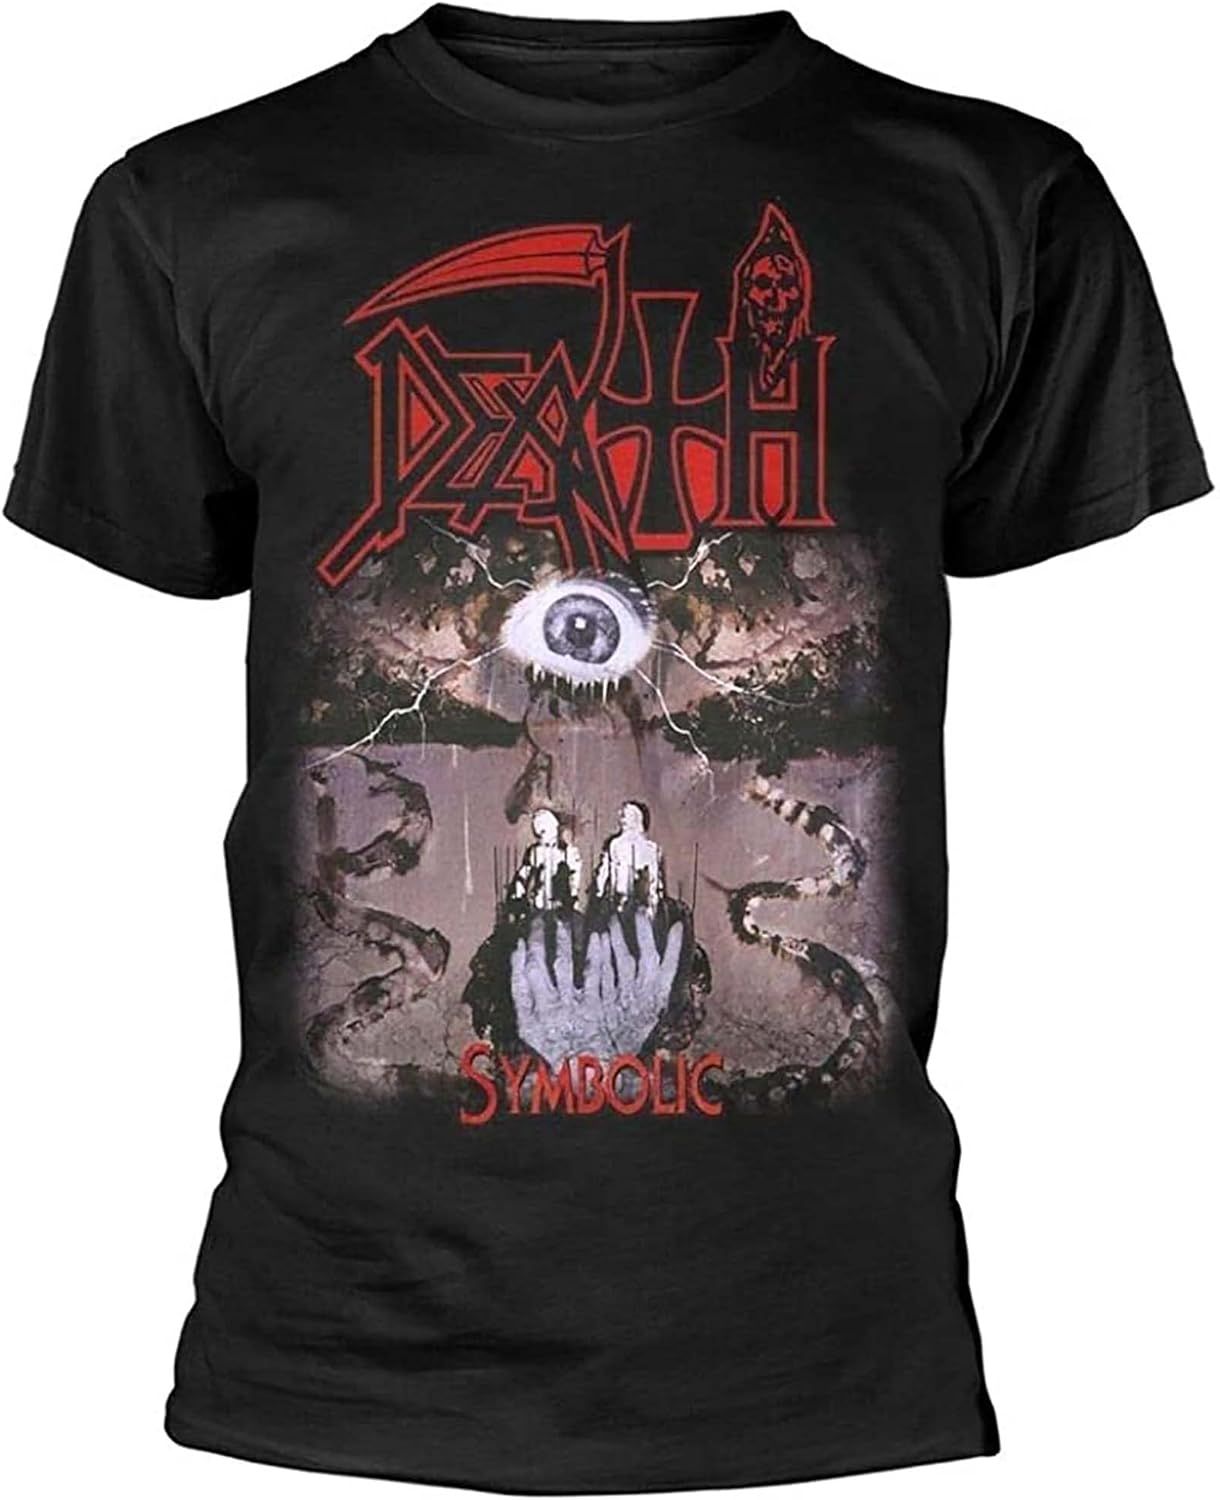 Death symbolic. Death symbolic футболка. Death Band футболка. Футболка Death Metal. Death symbolic 1995.